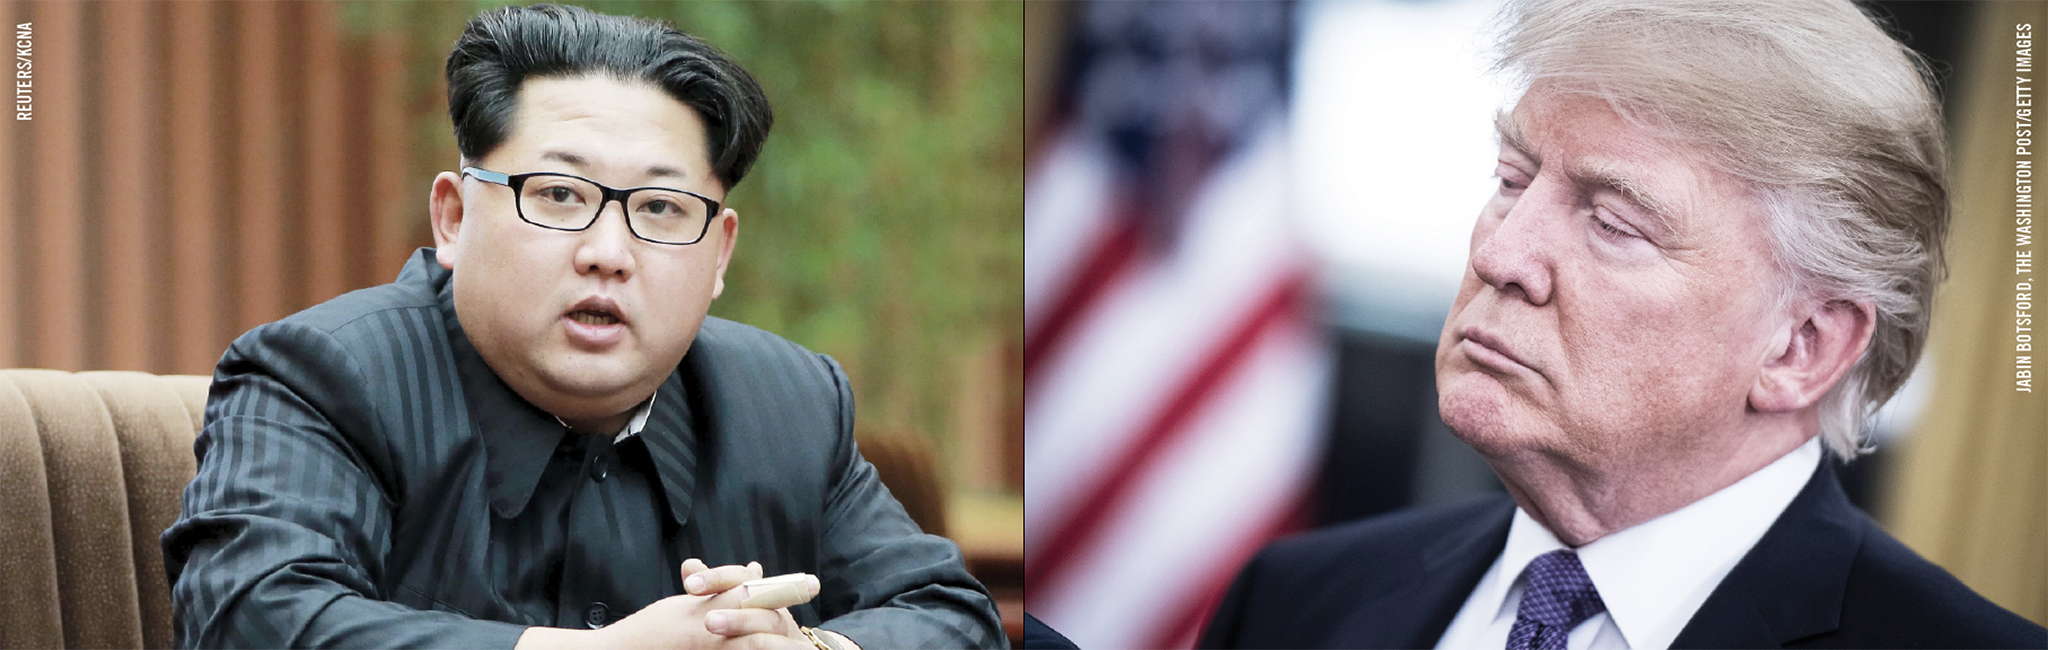 Crise | Pyongyang e Estados Unidos trocam novas ameaças. Trump muda de retórica